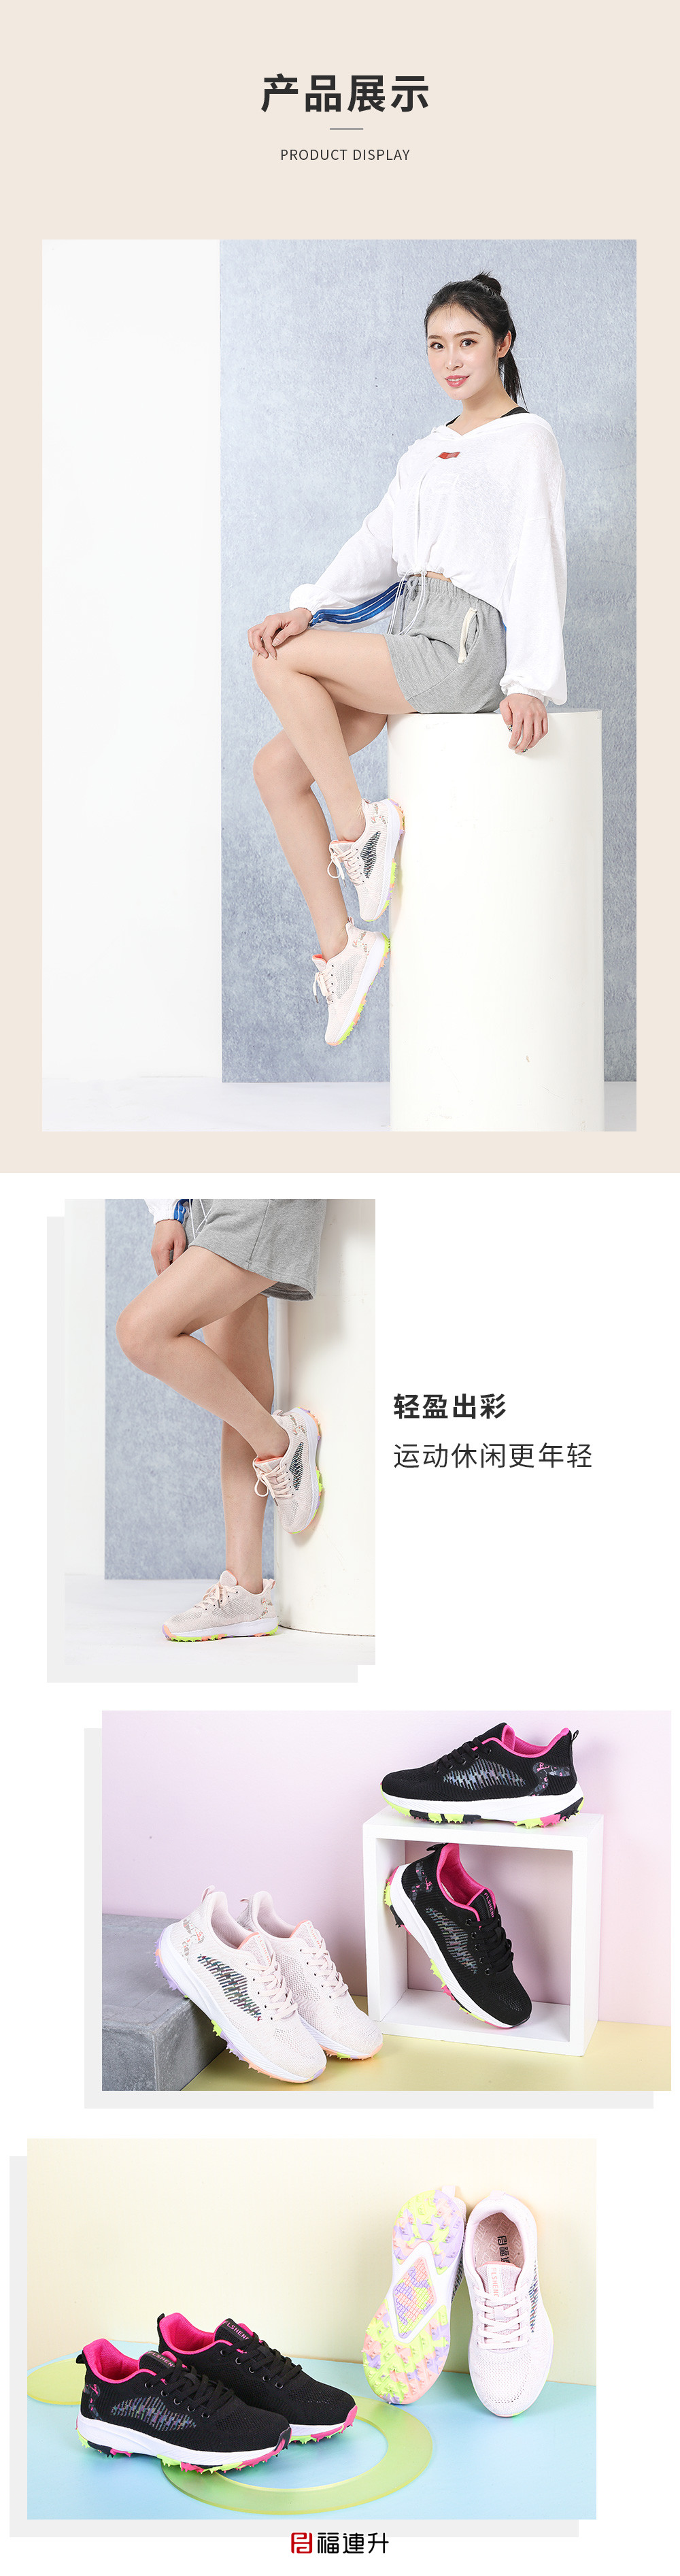 福连升夏运动透气防滑炫彩橡胶底女士休闲运动鞋(图6)